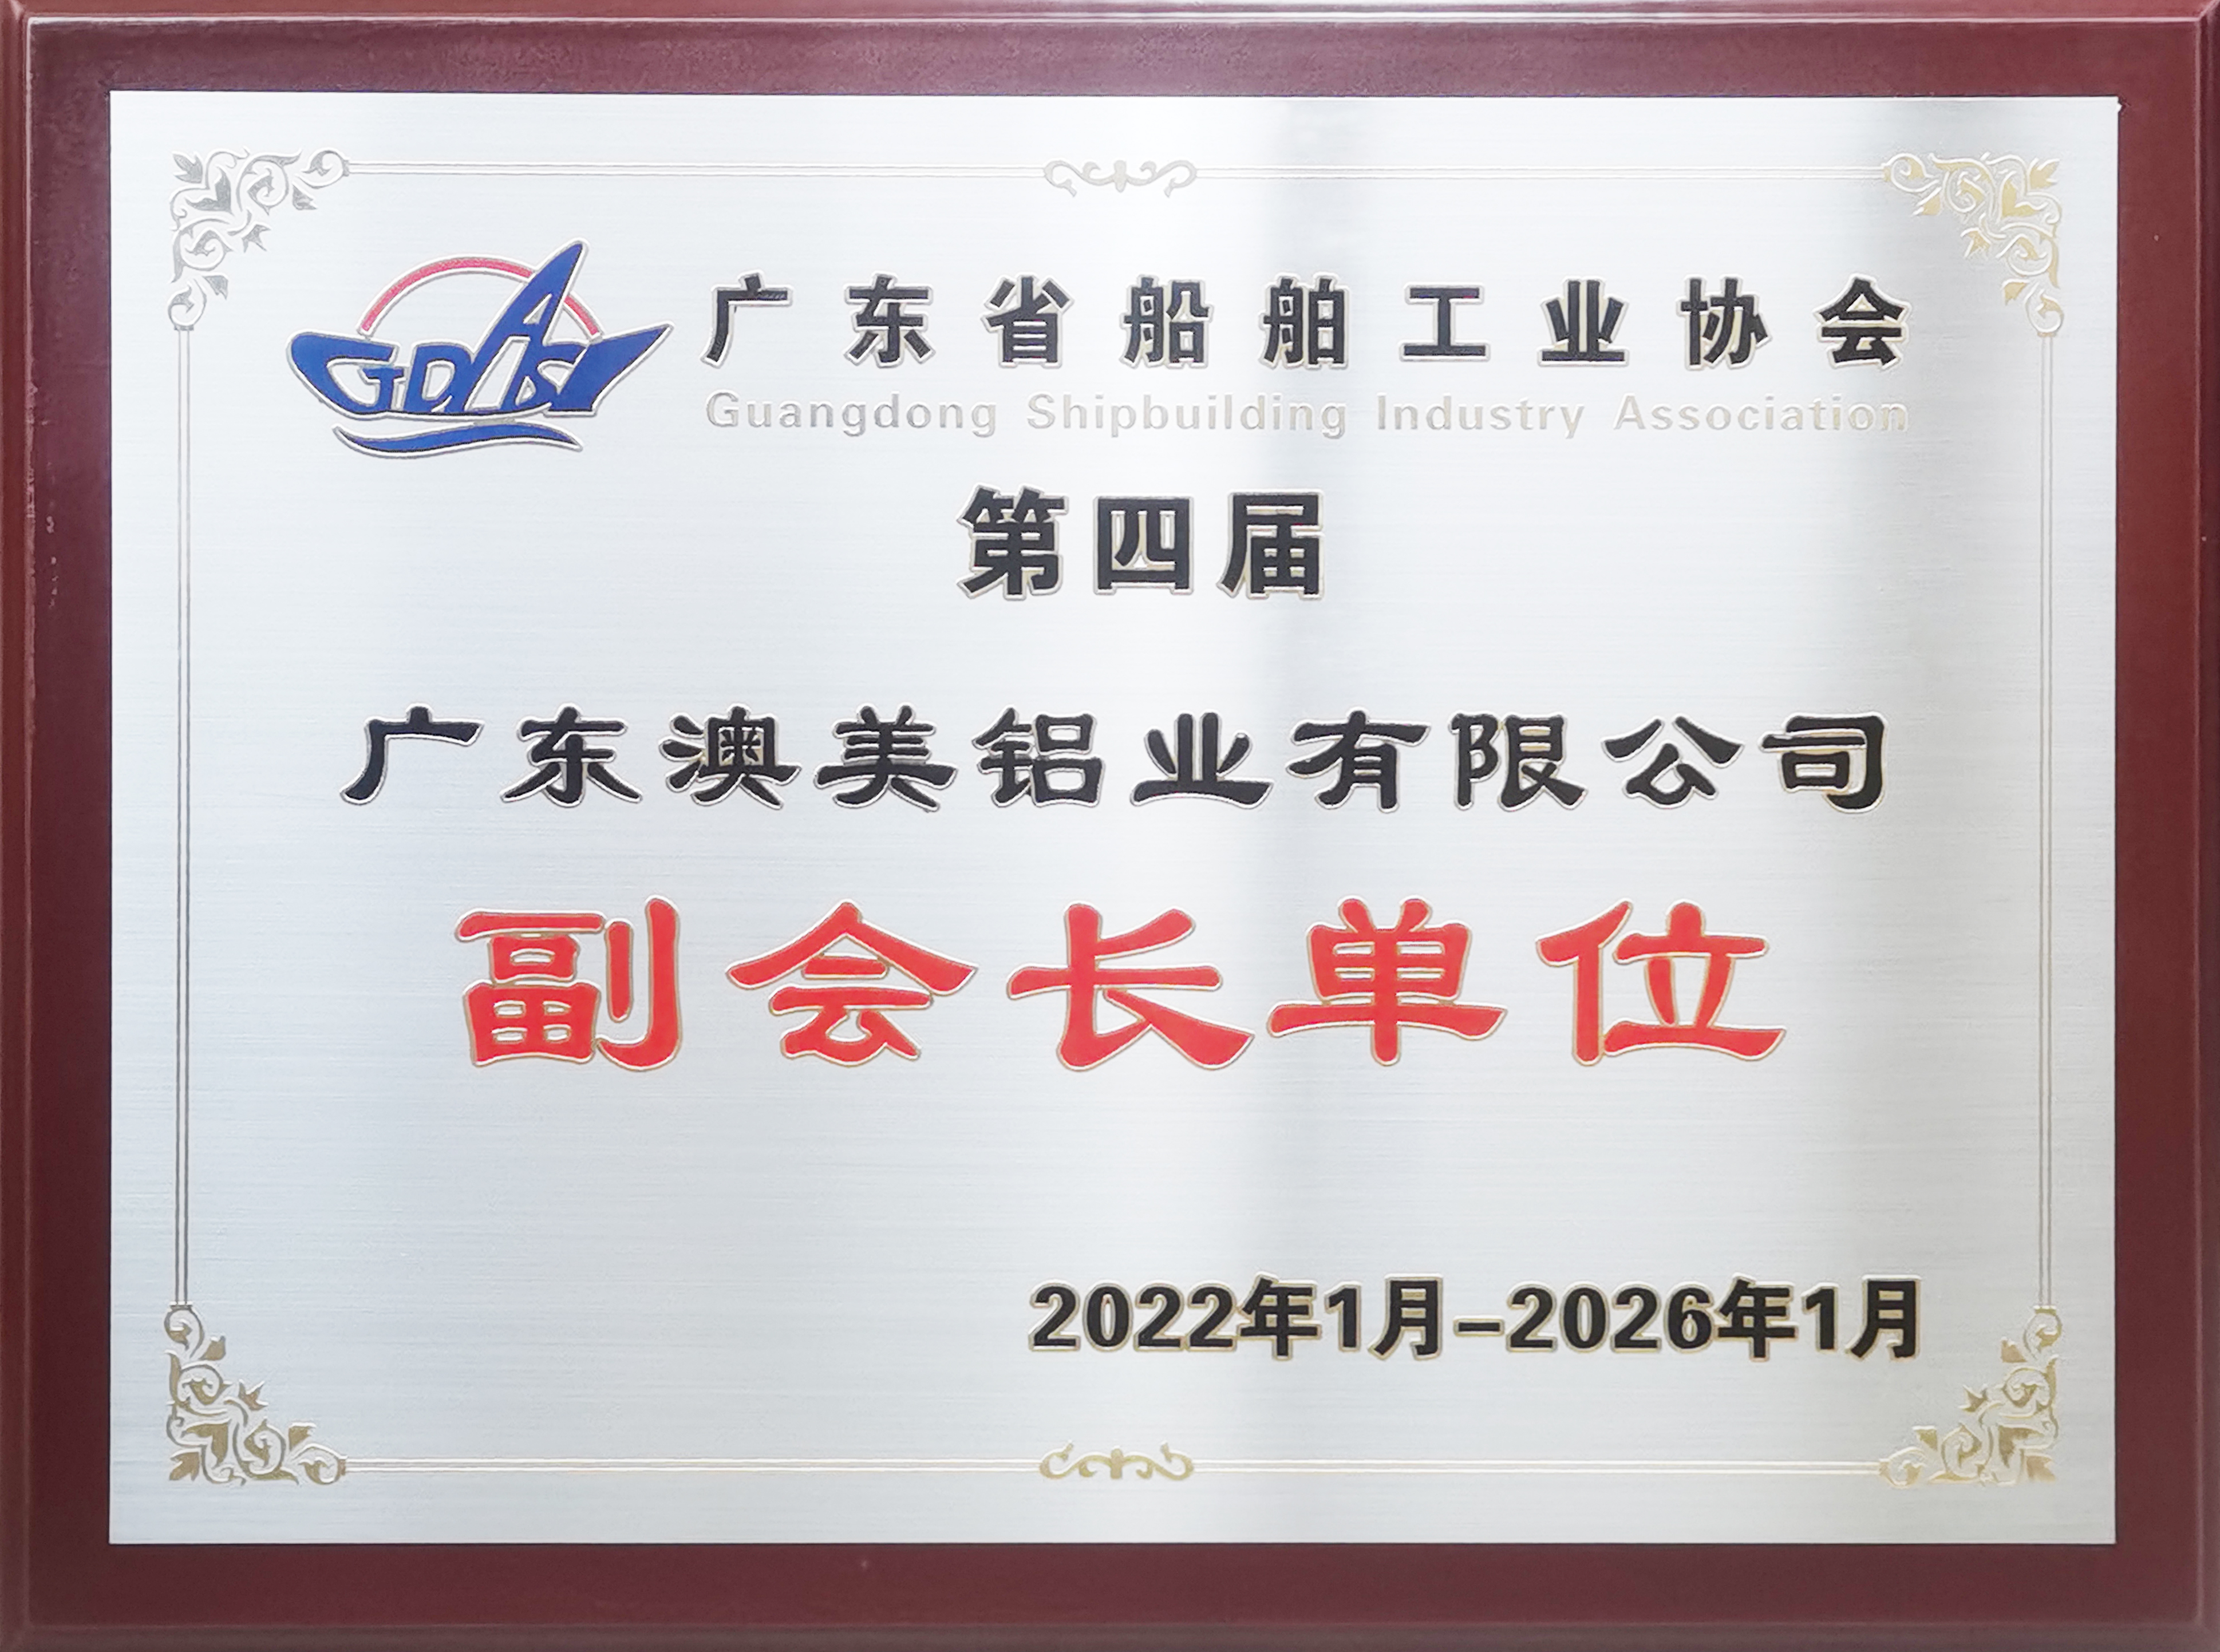 航路新征程 - 澳美铝业当选广东船舶工业协会副会长单位